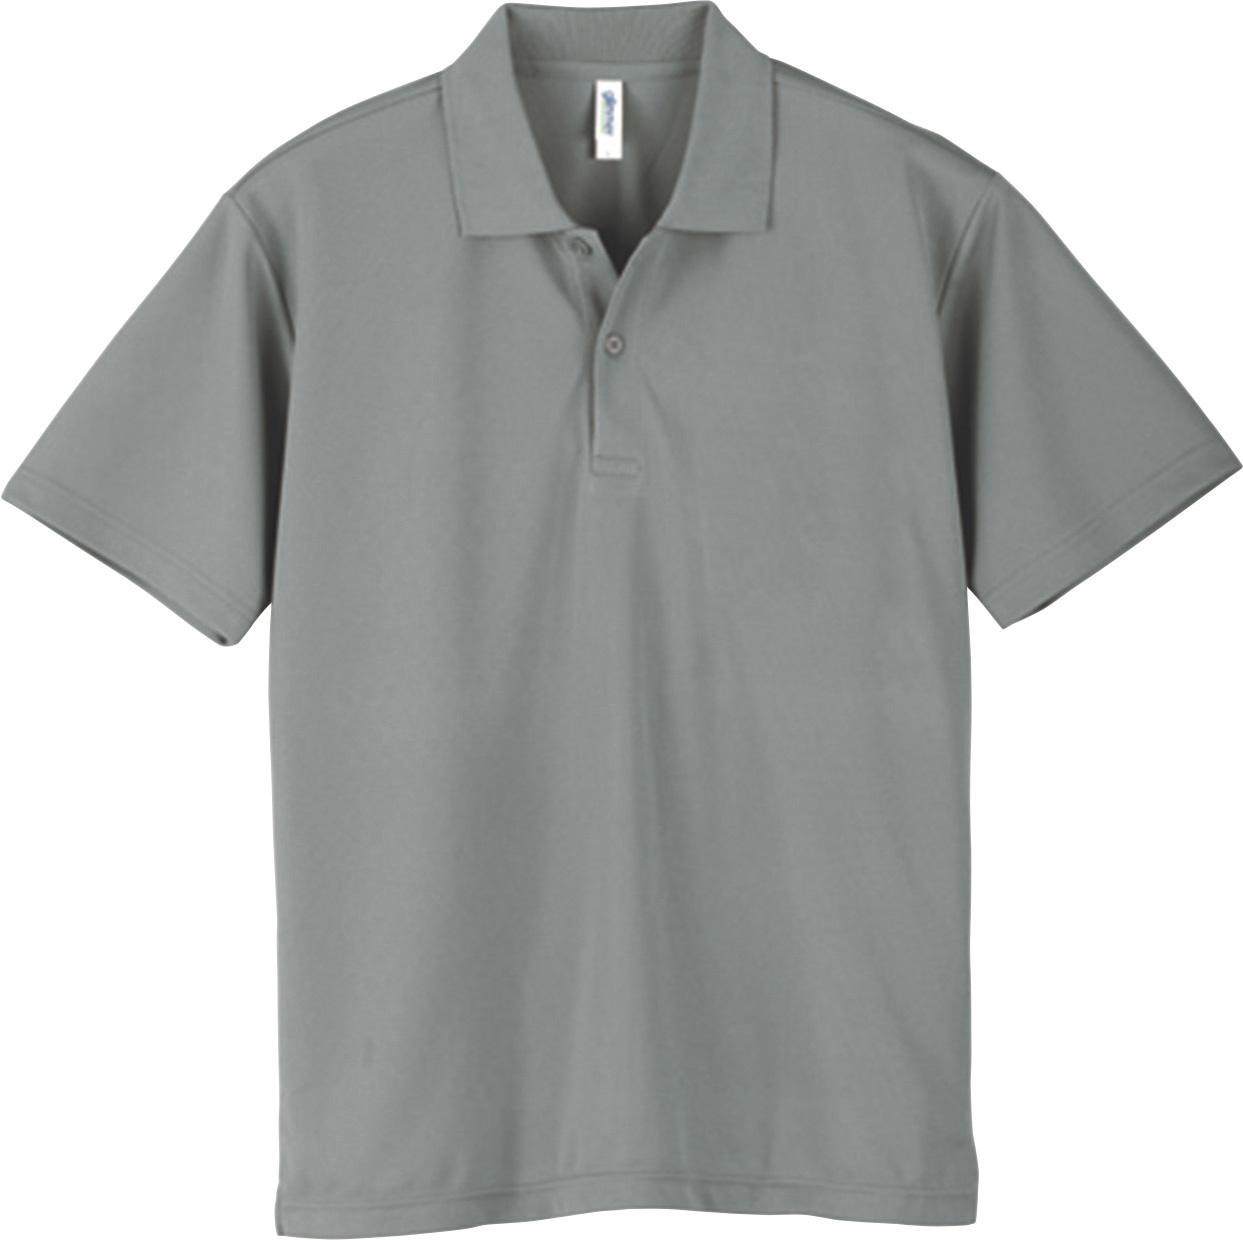 ポロシャツネーム – ポロシャツネームはポロシャツの胸ワンポイントに文字を入れて刺繍できるサービス